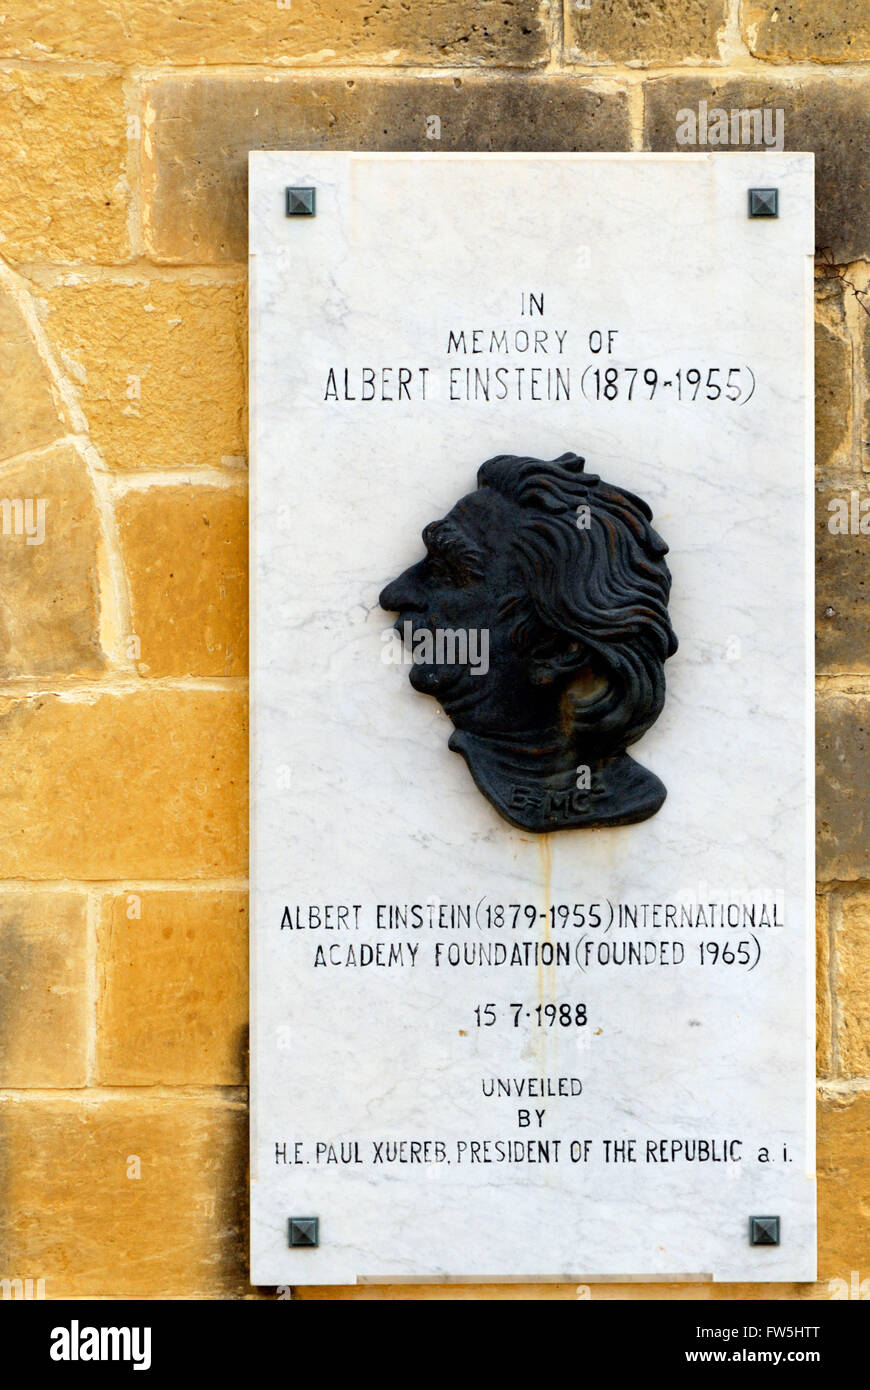 plaque commemorating Alfred Einstein, 1879-1955, Viennese mathematician, International Academy Foundation, in Malta, on bastion of Upper Barracca Gardens overlooking Valletta harbour / (Barrakka), Malta Stock Photo